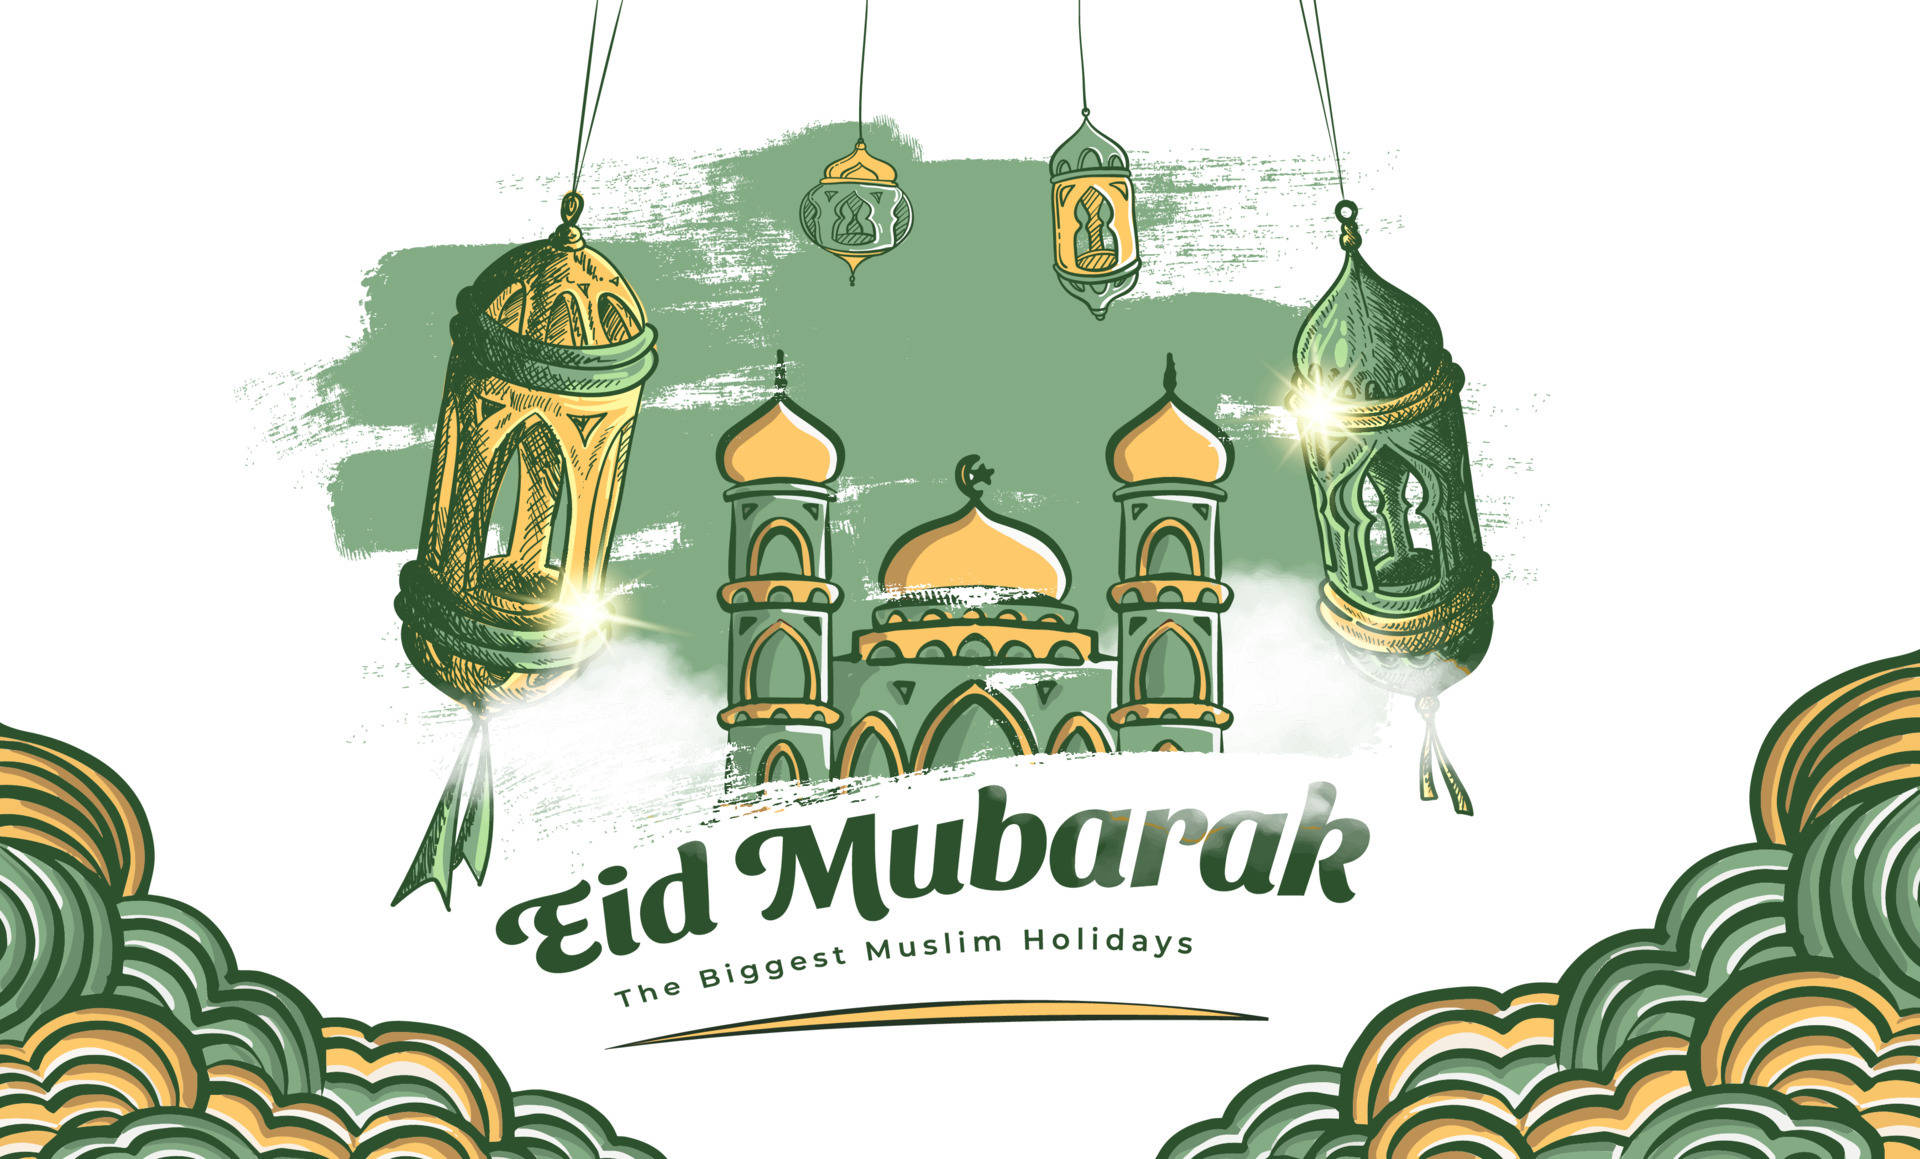 Exquisite Celebration Of Eid Mubarak